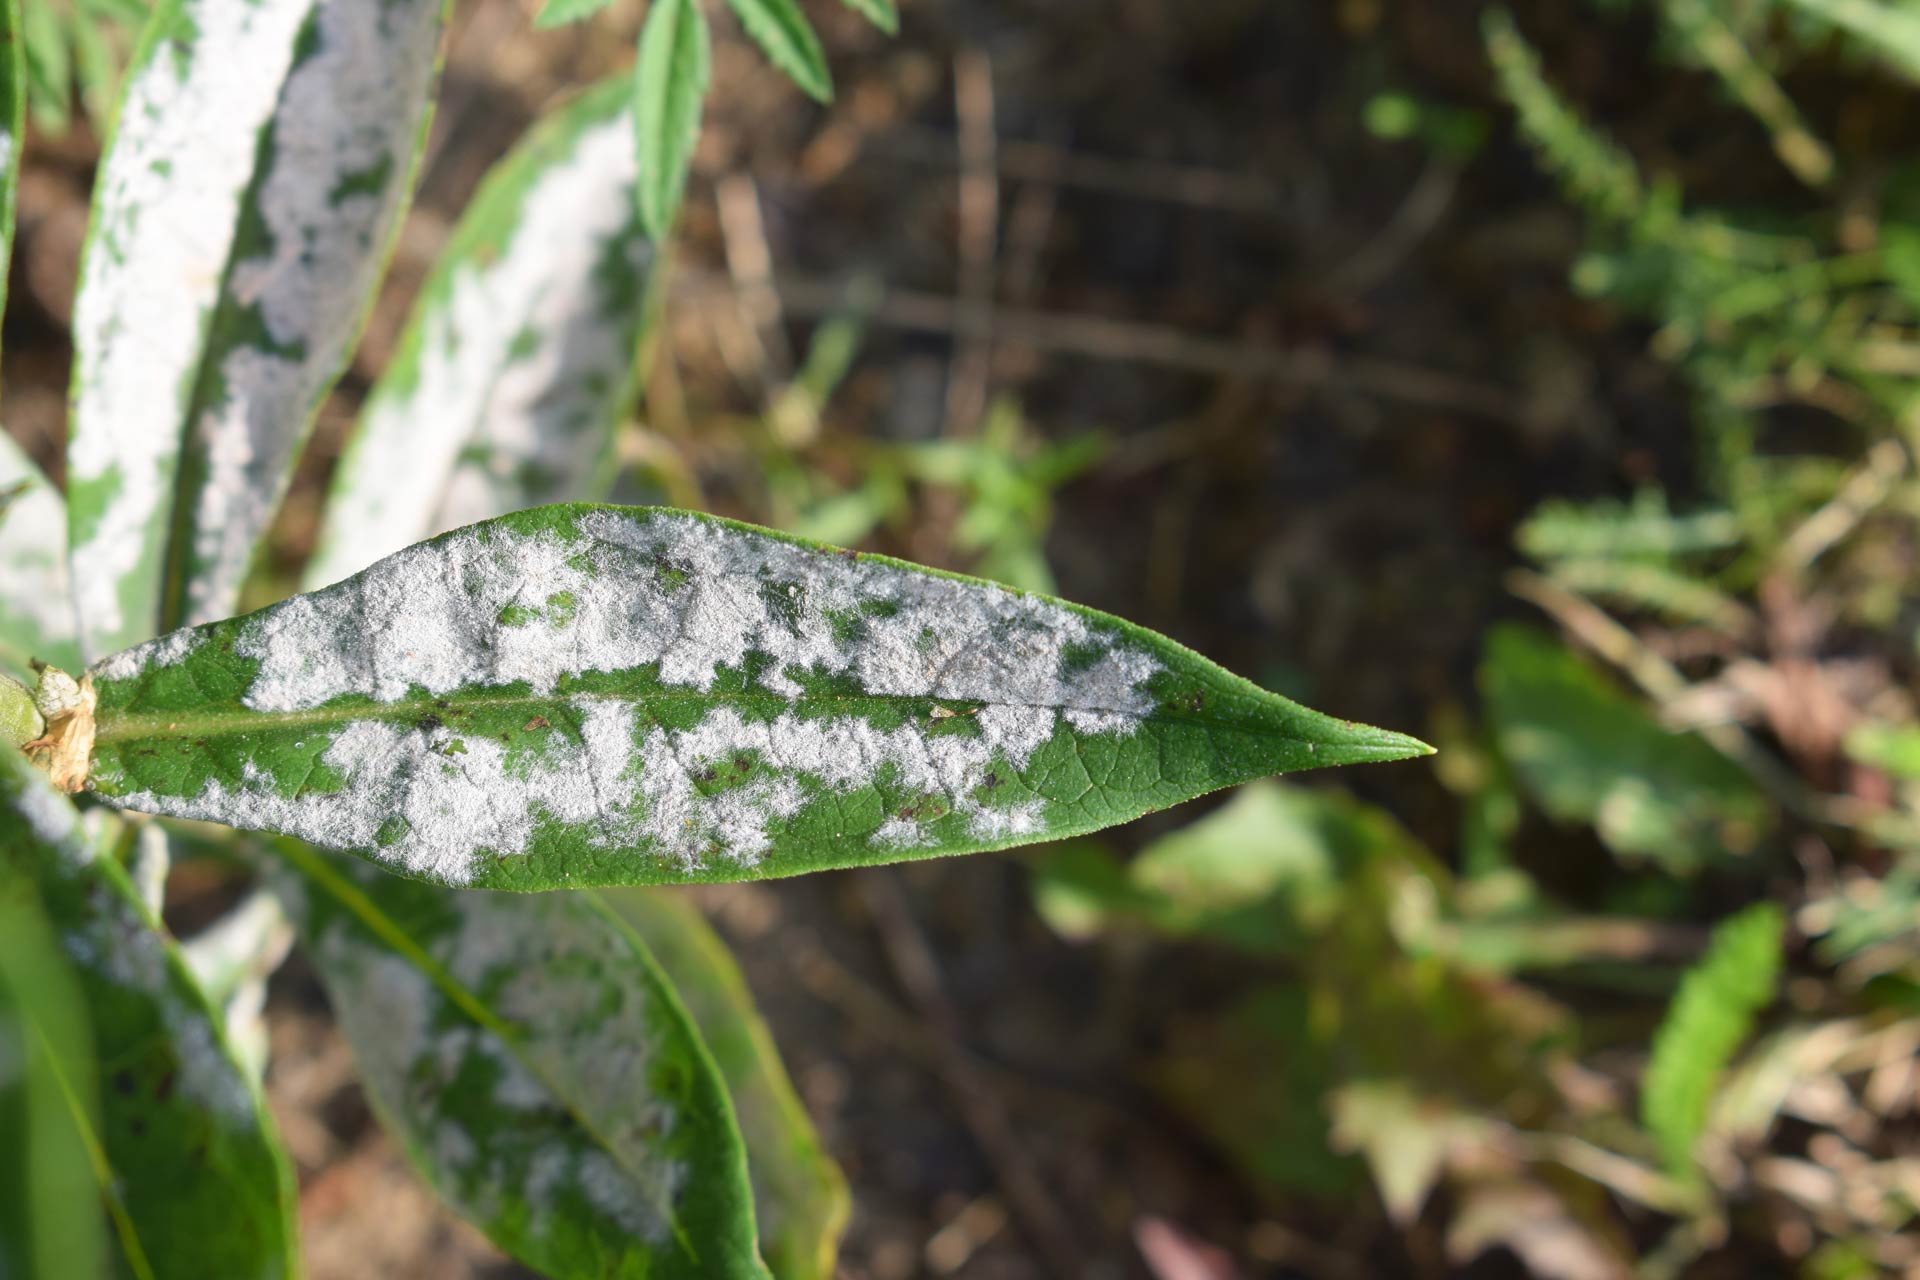 Powdery mildew on phlox leaf